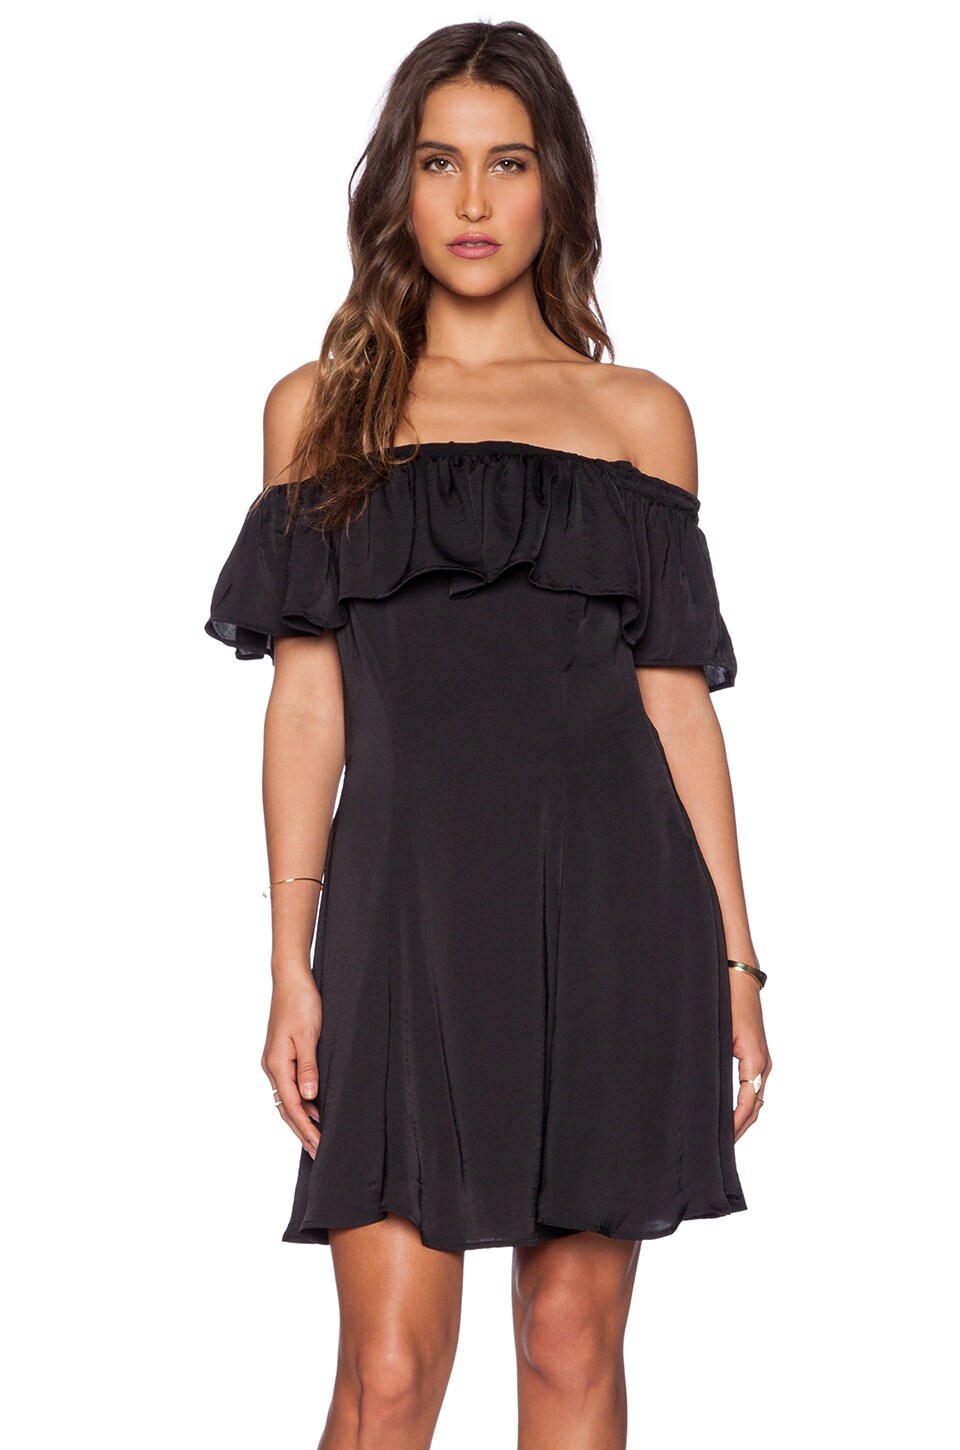 shoulderless black dress